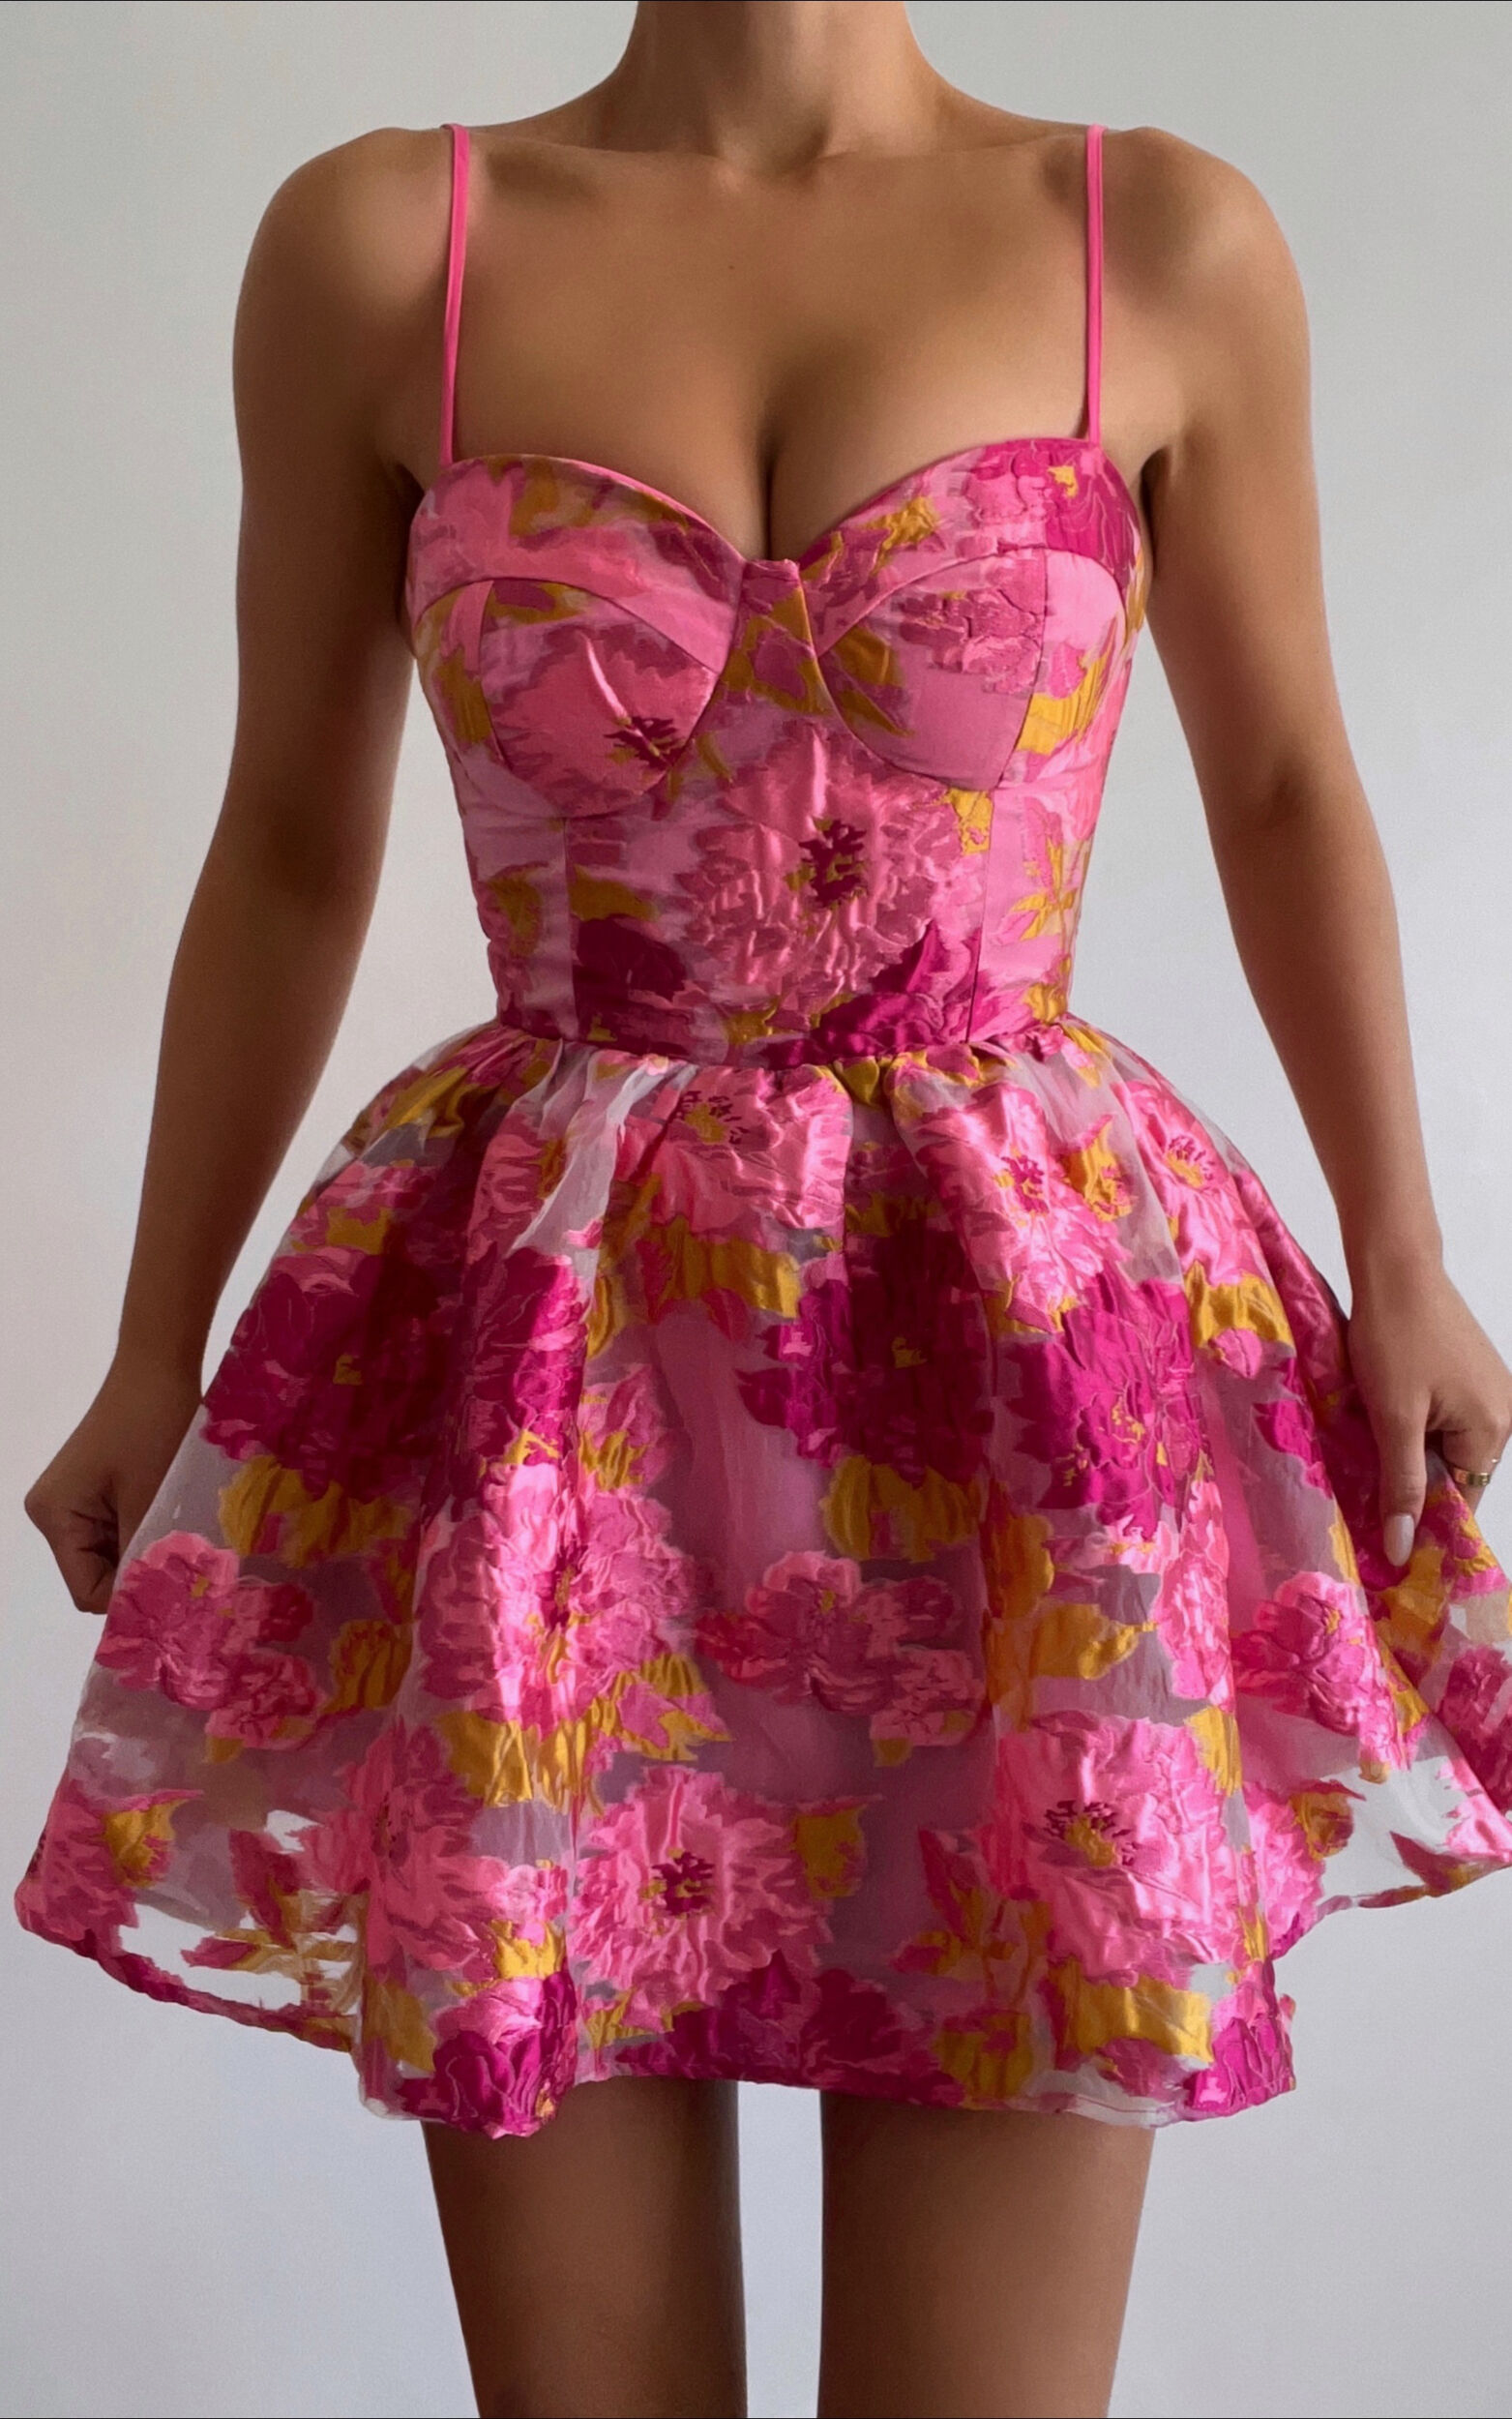 Brailey Mini Dress - Sweetheart Bustier Dress in Pink Jacquard | Showpo